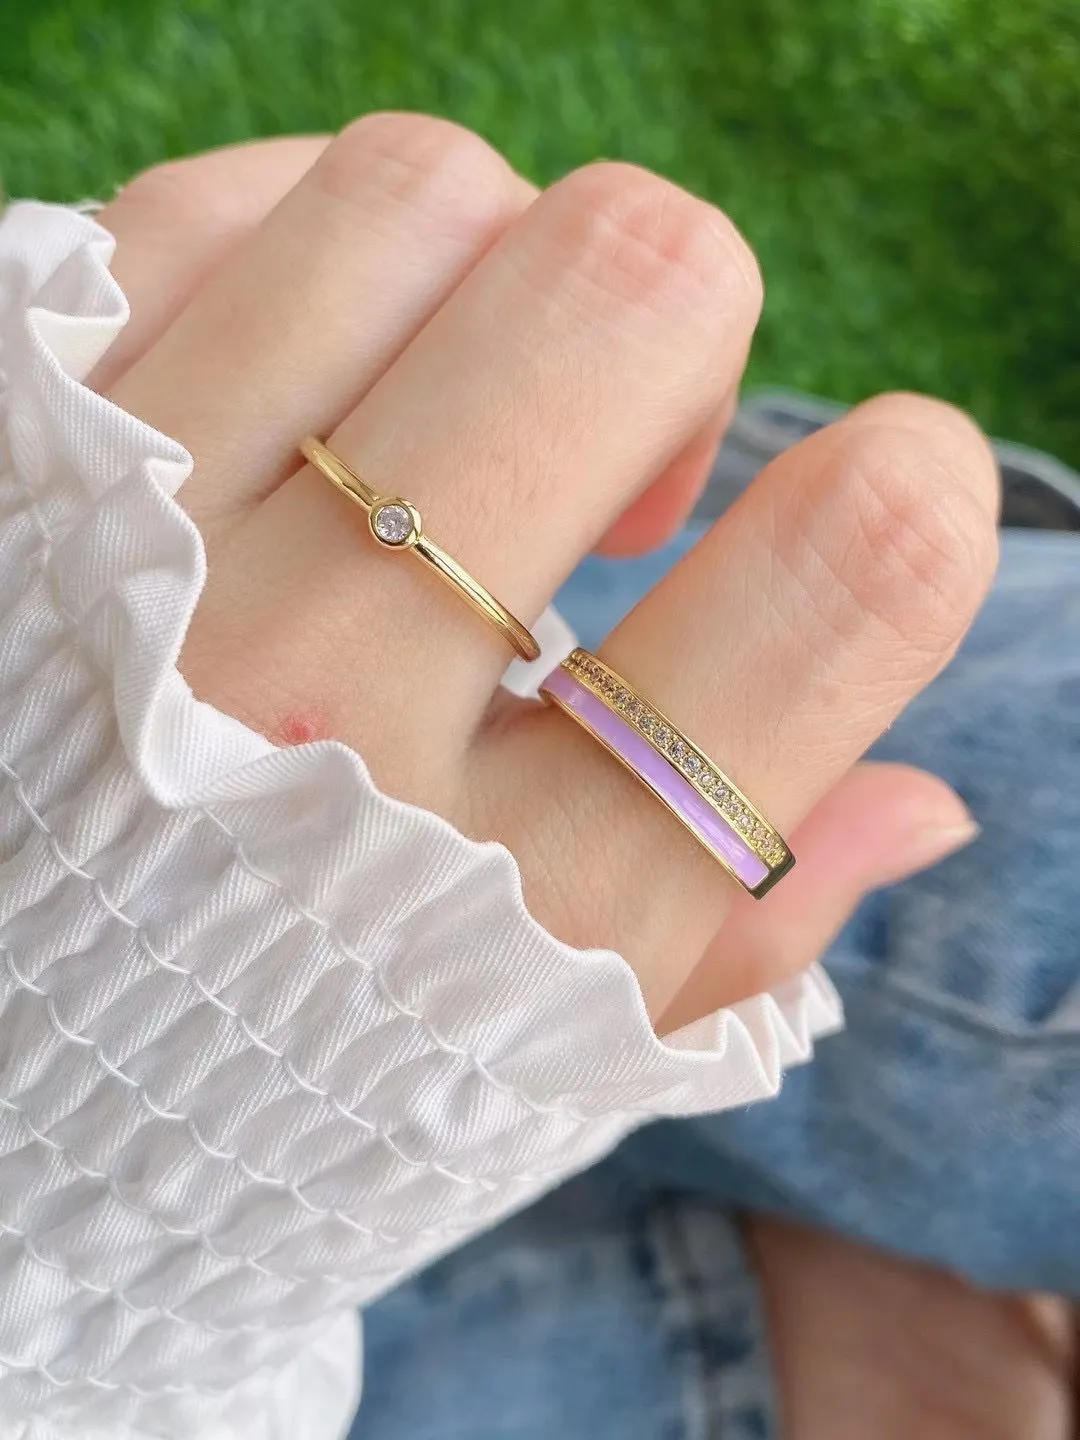 10 Uds cz cristal micro pavé arcoíris anillo colorido esmalte anillo joyería de moda 2021 joyería regalos fiesta